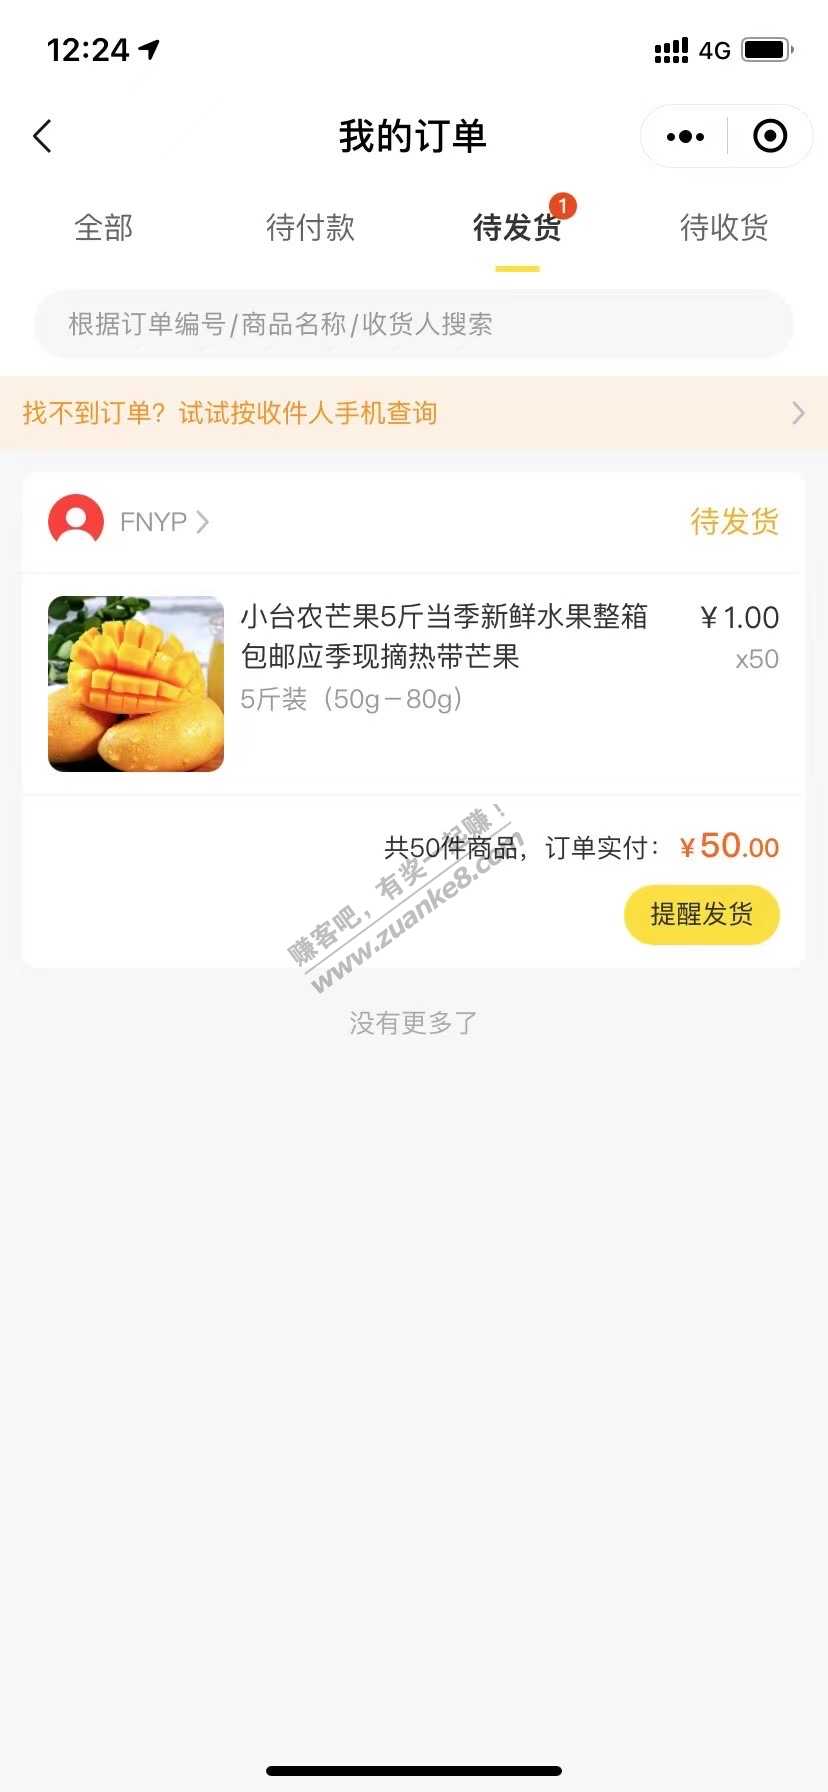 微视50元250斤的芒果商家打电话了-惠小助(52huixz.com)